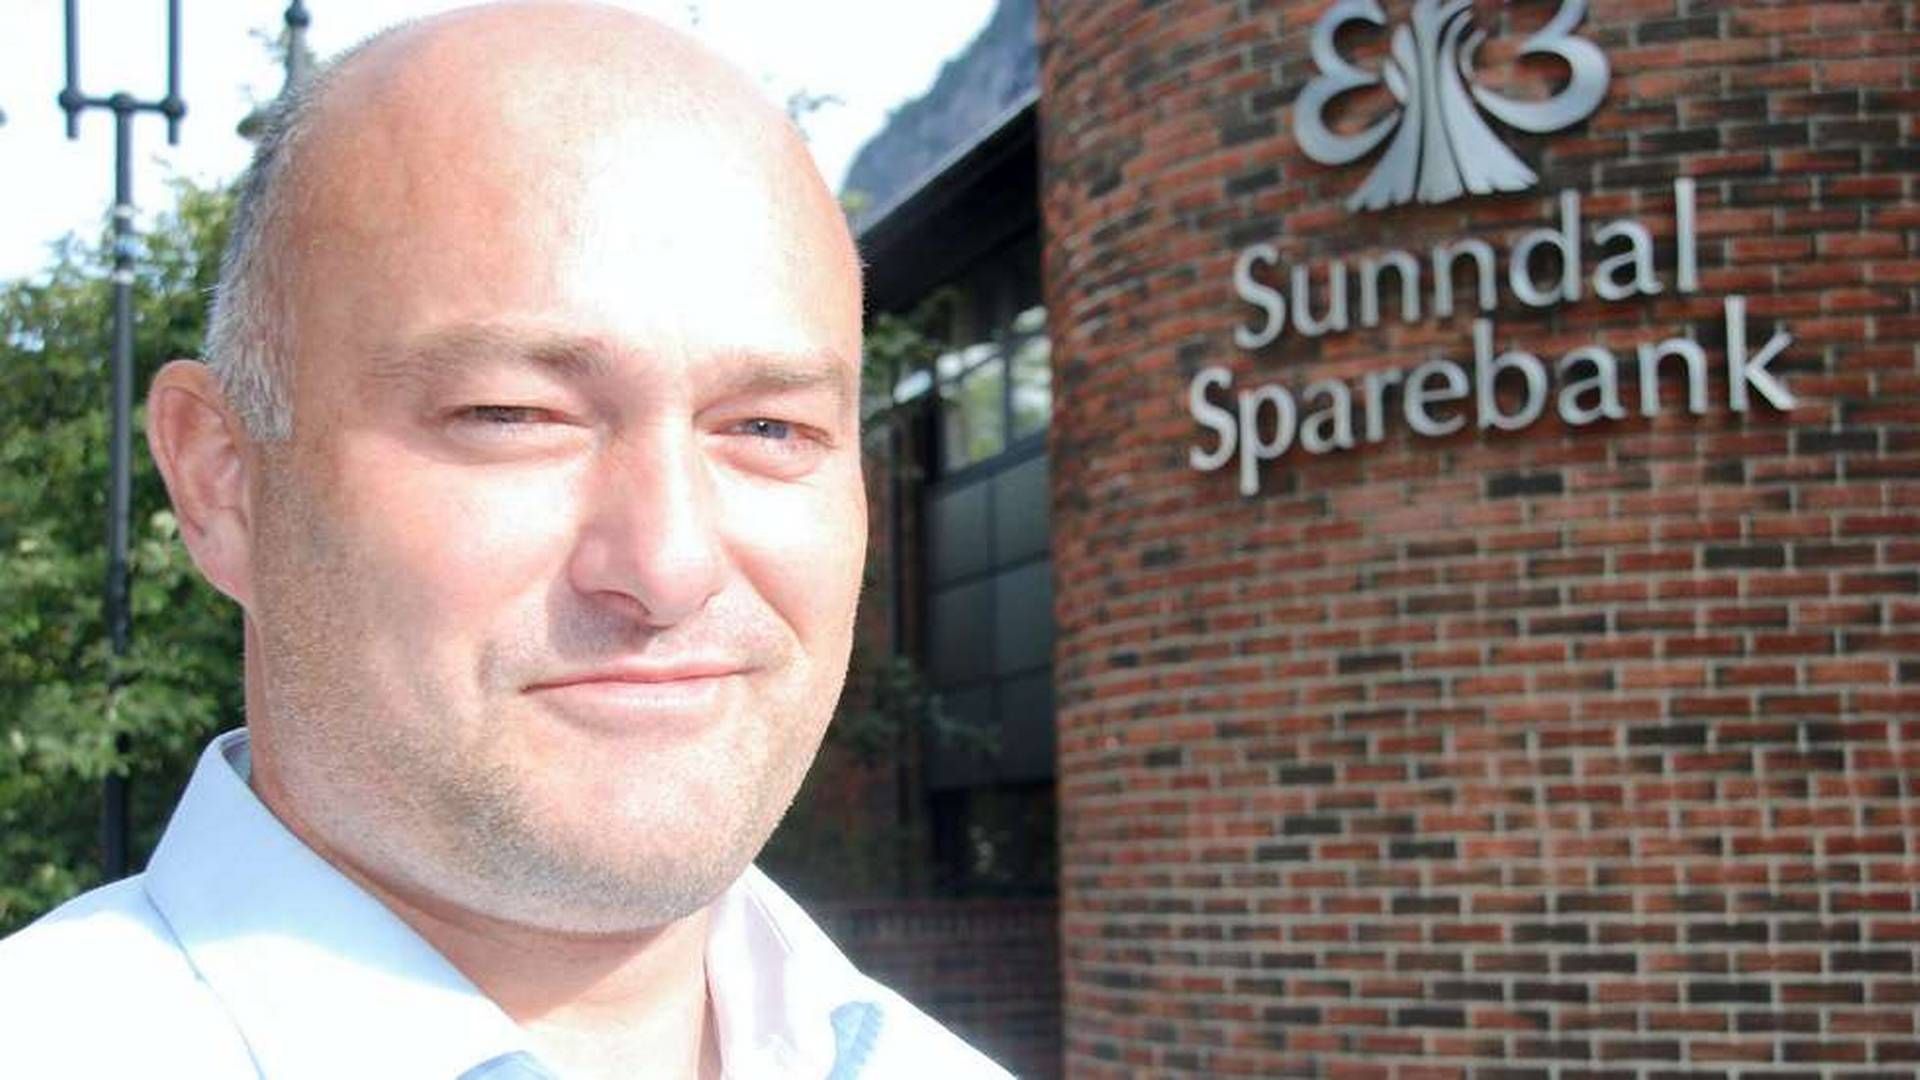 Adm. banksjef Jonny Engdahl i Sunndal Sparebank får 3000 nye forsikringskunder ut av fusjonen mellom Surnadal Sparebank og Sparebank 1 Nordvest.